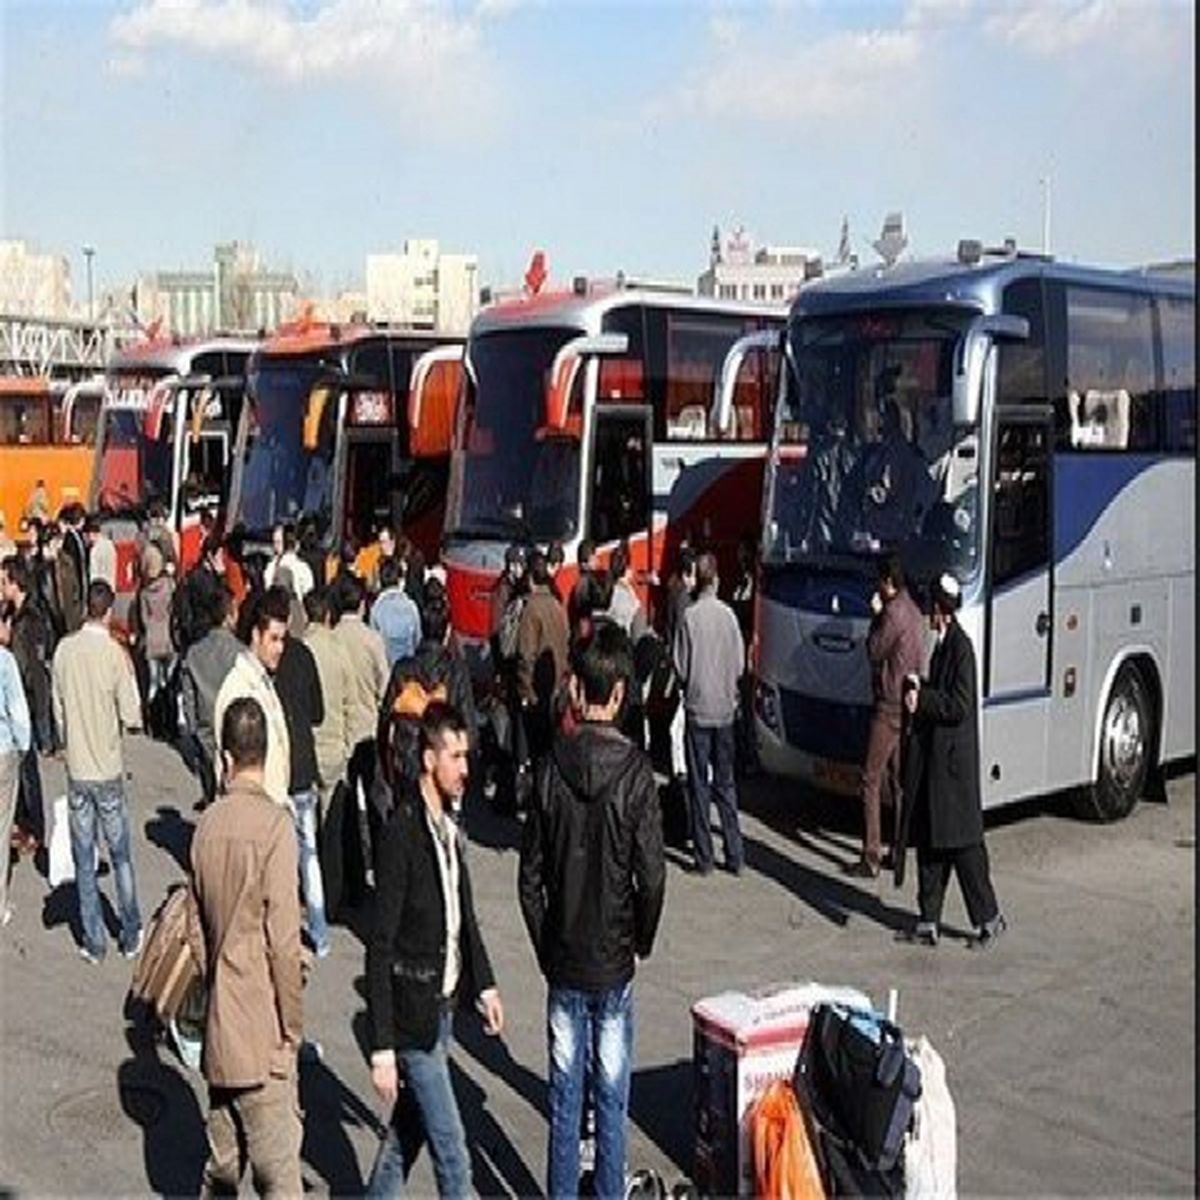 موضوع کمبود اتوبوس در پایانه های مسافربری مشهد صحت ندارد